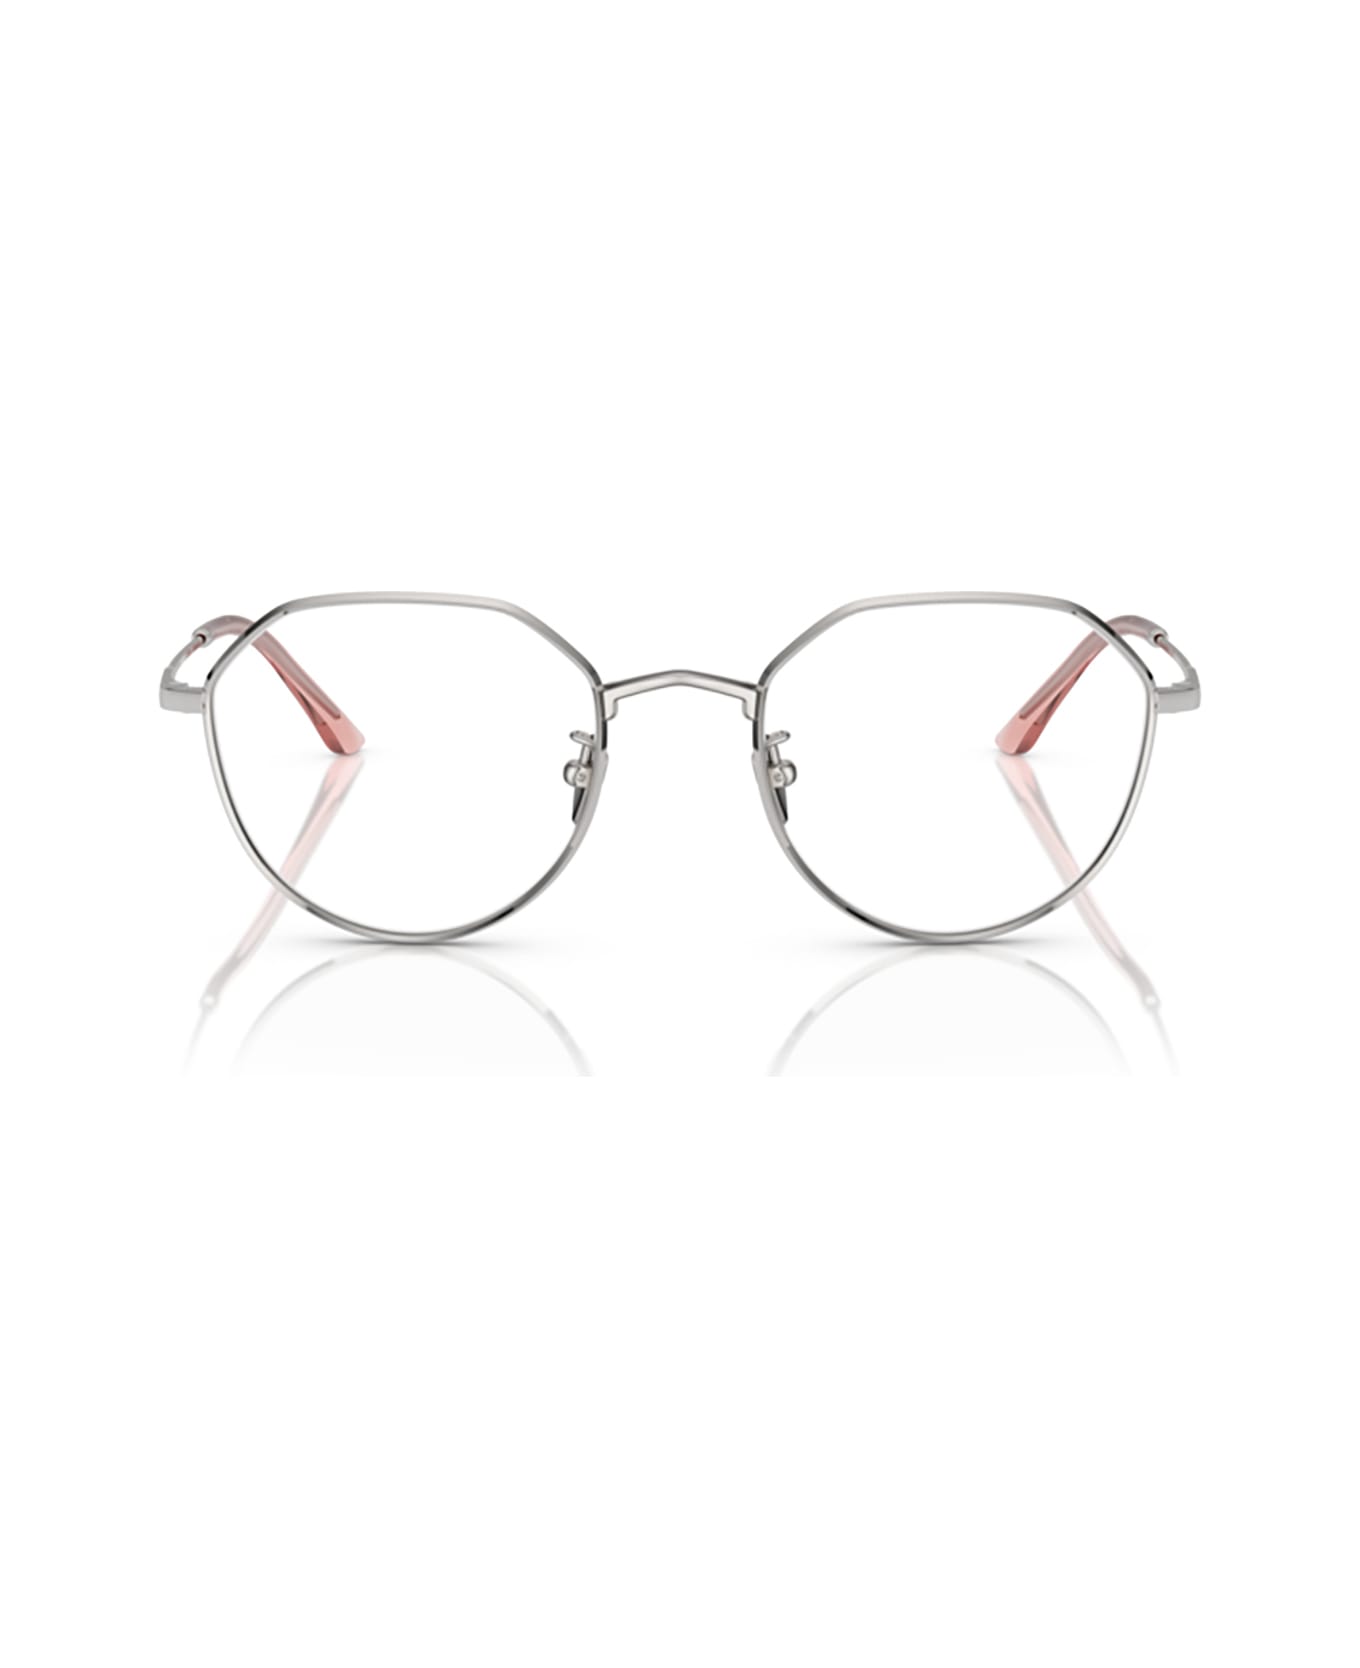 Giorgio Armani Ar5142 Silver Glasses - Silver